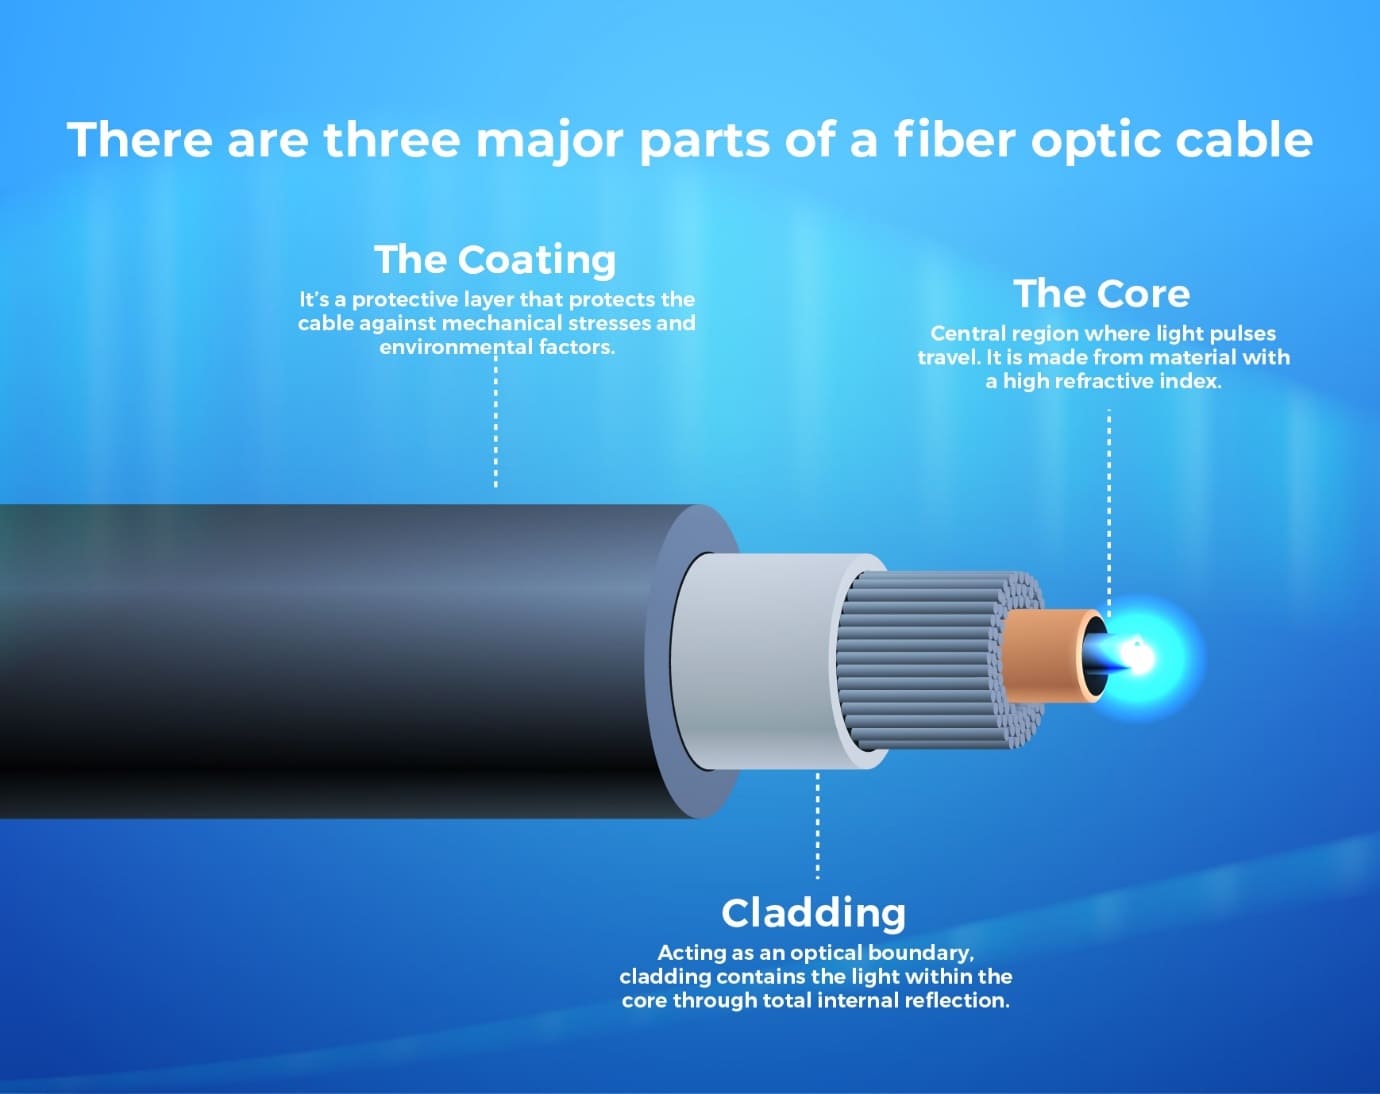 7 Advantages of Fiber Optic Cables Over Copper Cables